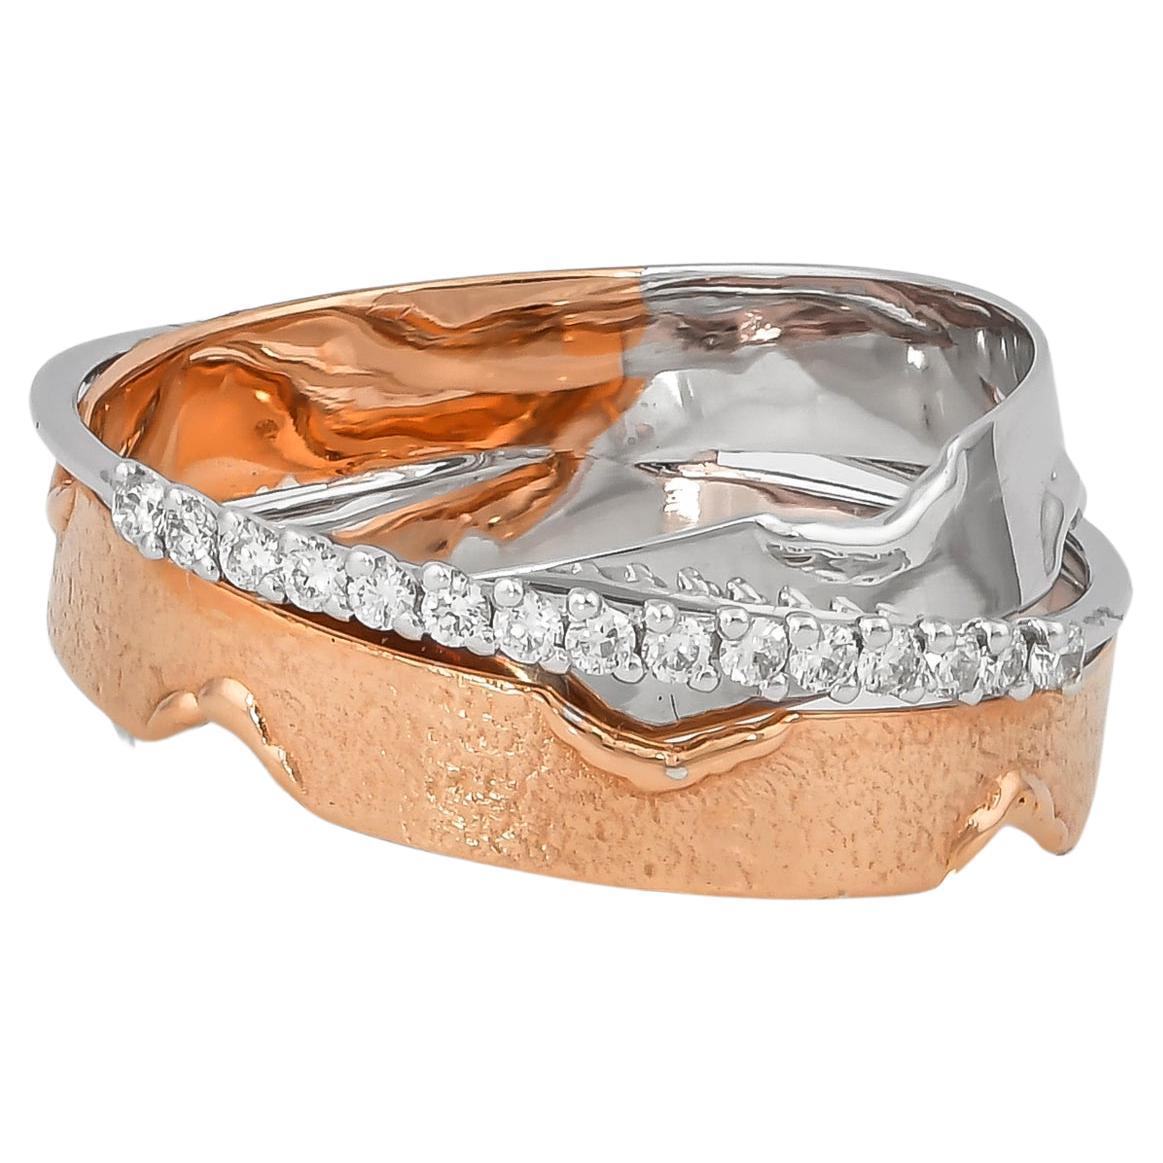 0.145 Carat Diamond Ring in 18 Karat White & Rose Gold